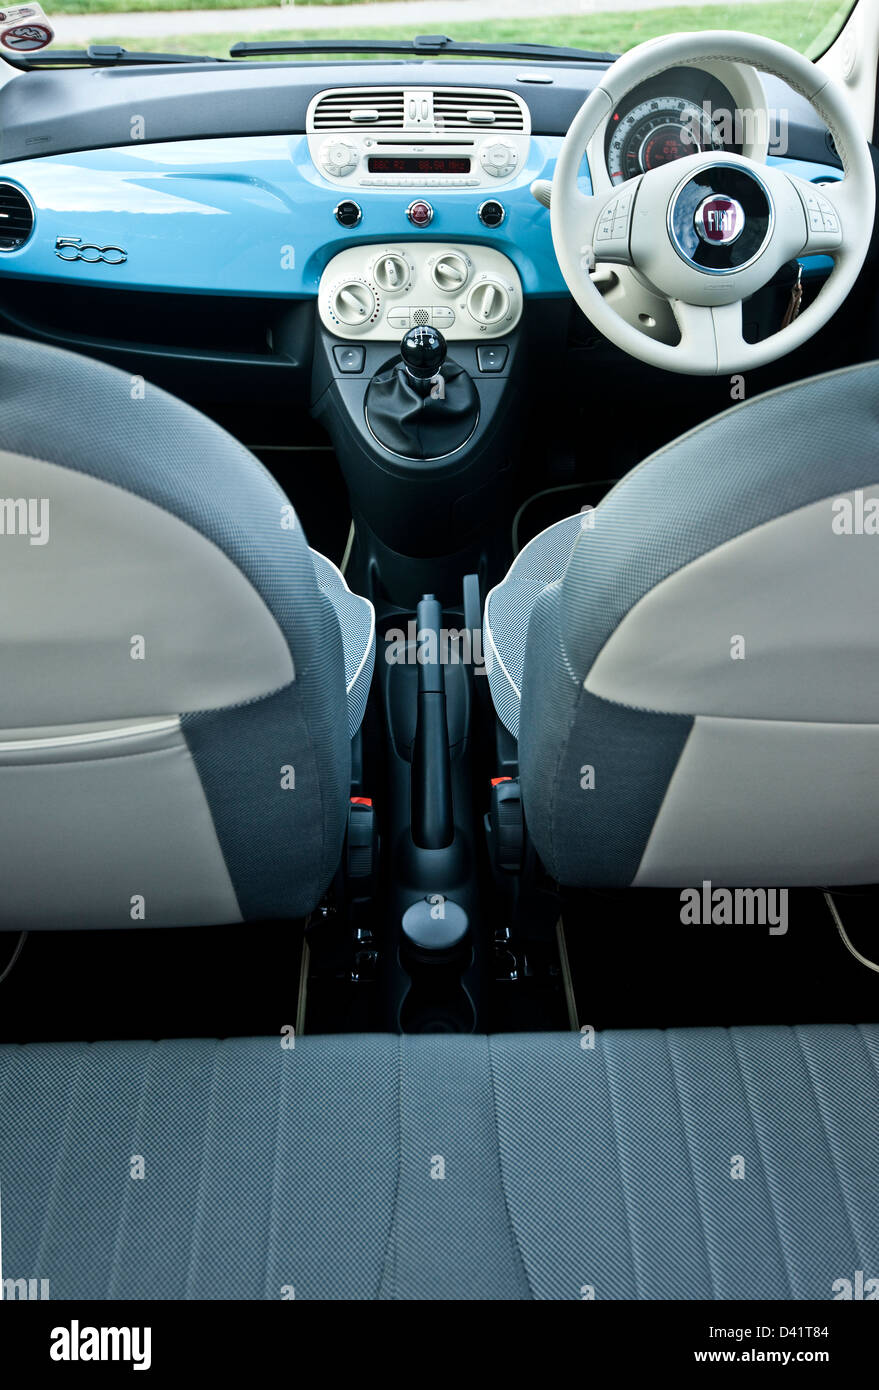 Fiat Dashboard Stockfotos Und Bilder Kaufen Alamy